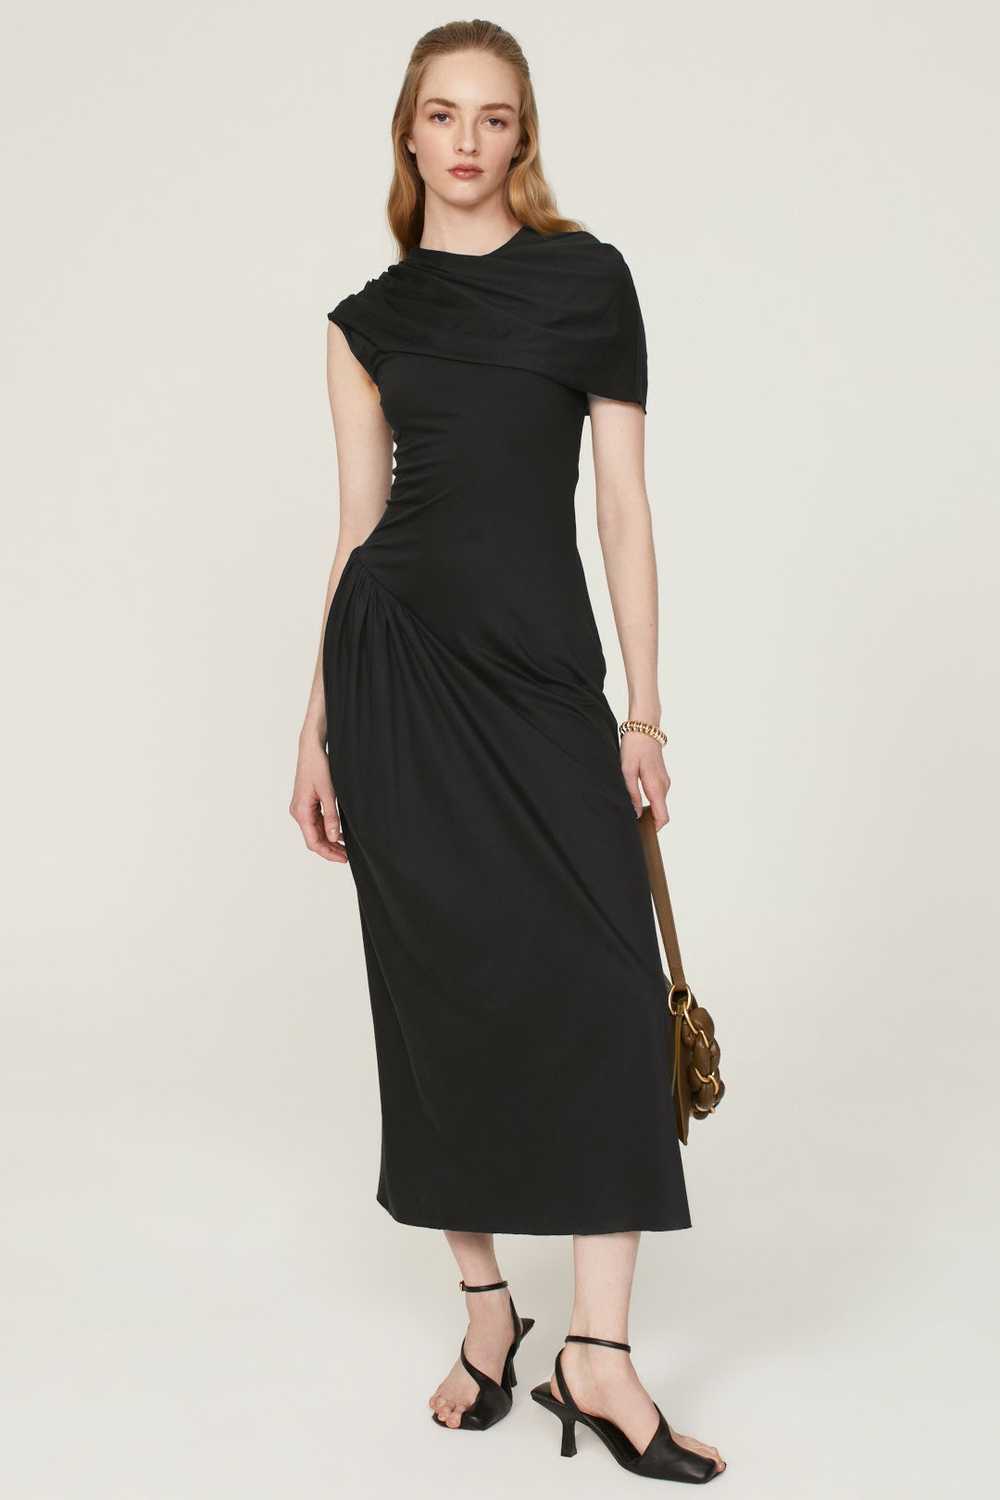 Marina Moscone Sarong Dress - image 1